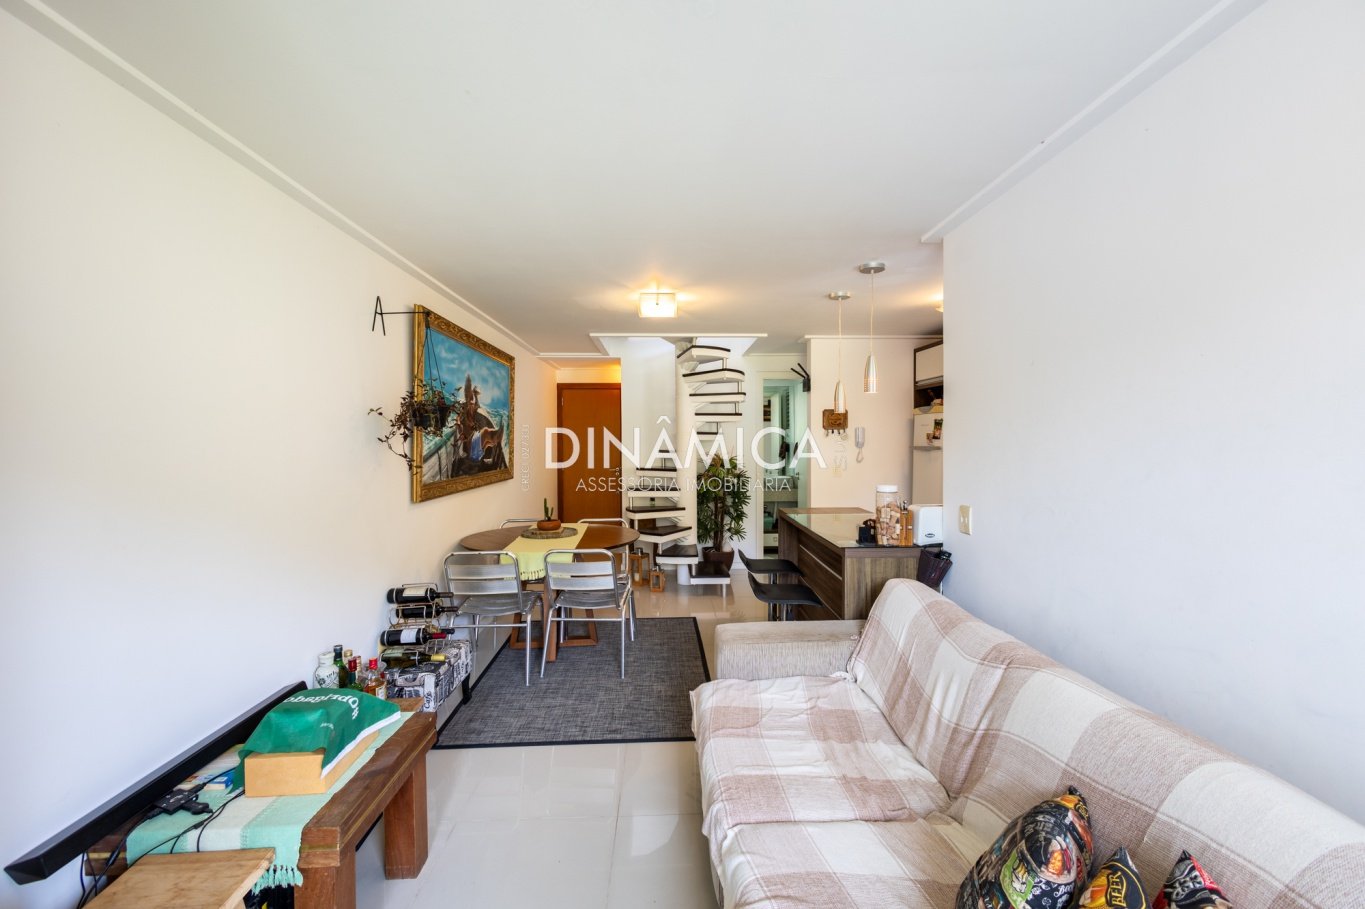 duplex vila nova, apto com suite, imobiliaria em blumenau, dinamica sul imobiliaria, apto para airbnb, apto ultimo andar